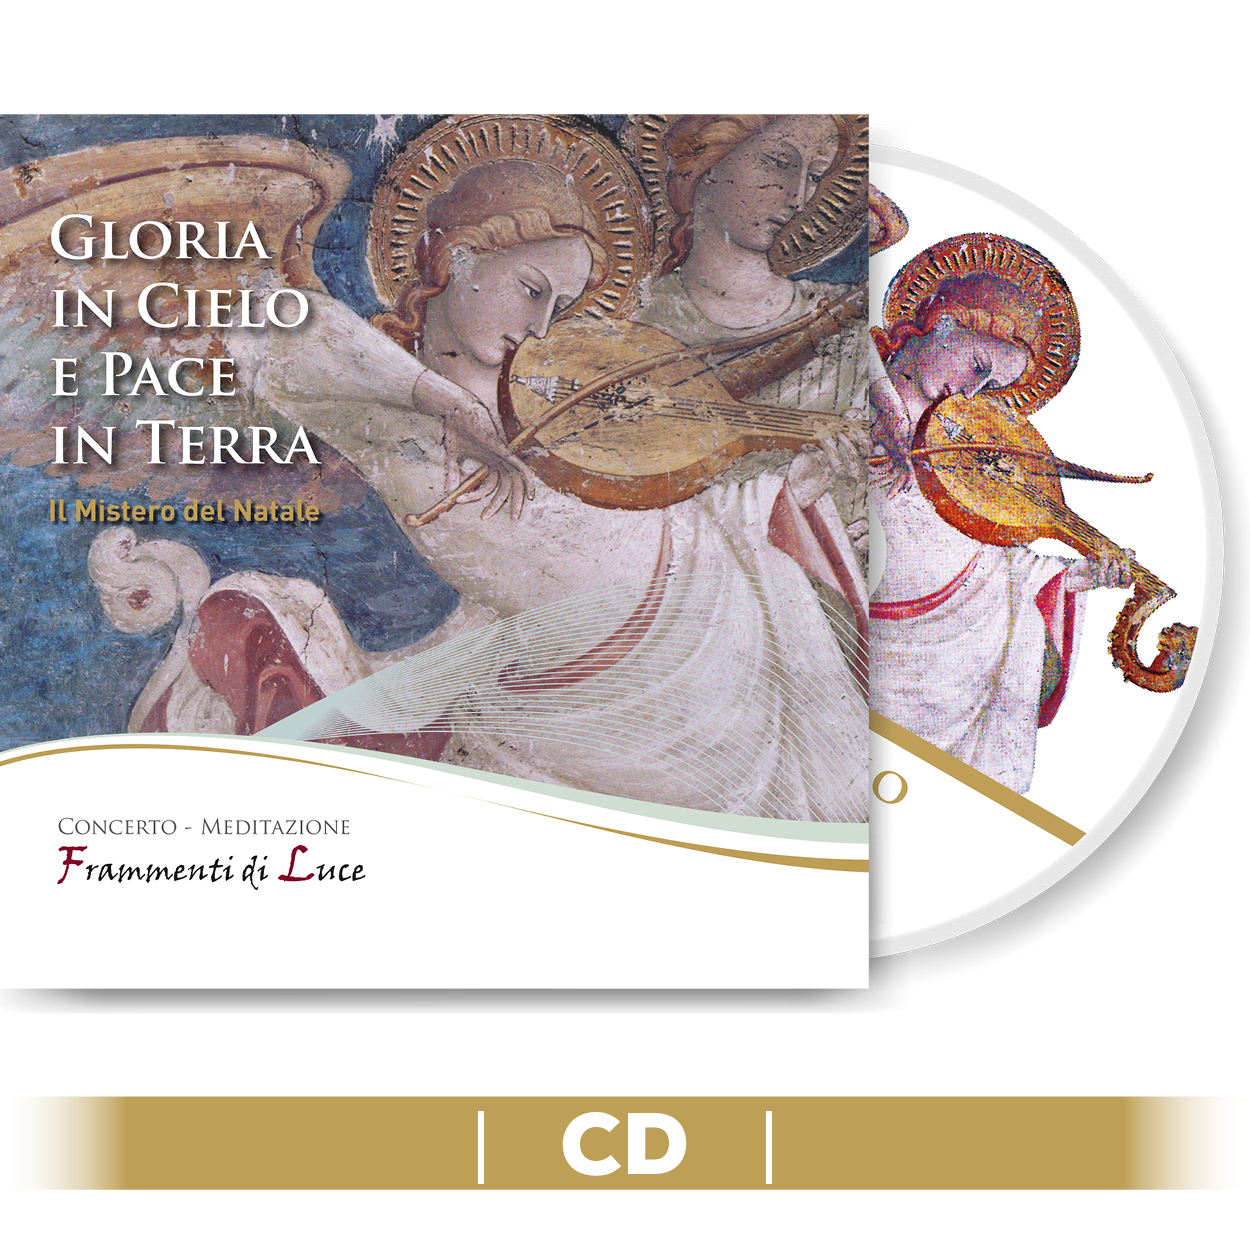 CD - Gloria in cielo e pace in terra